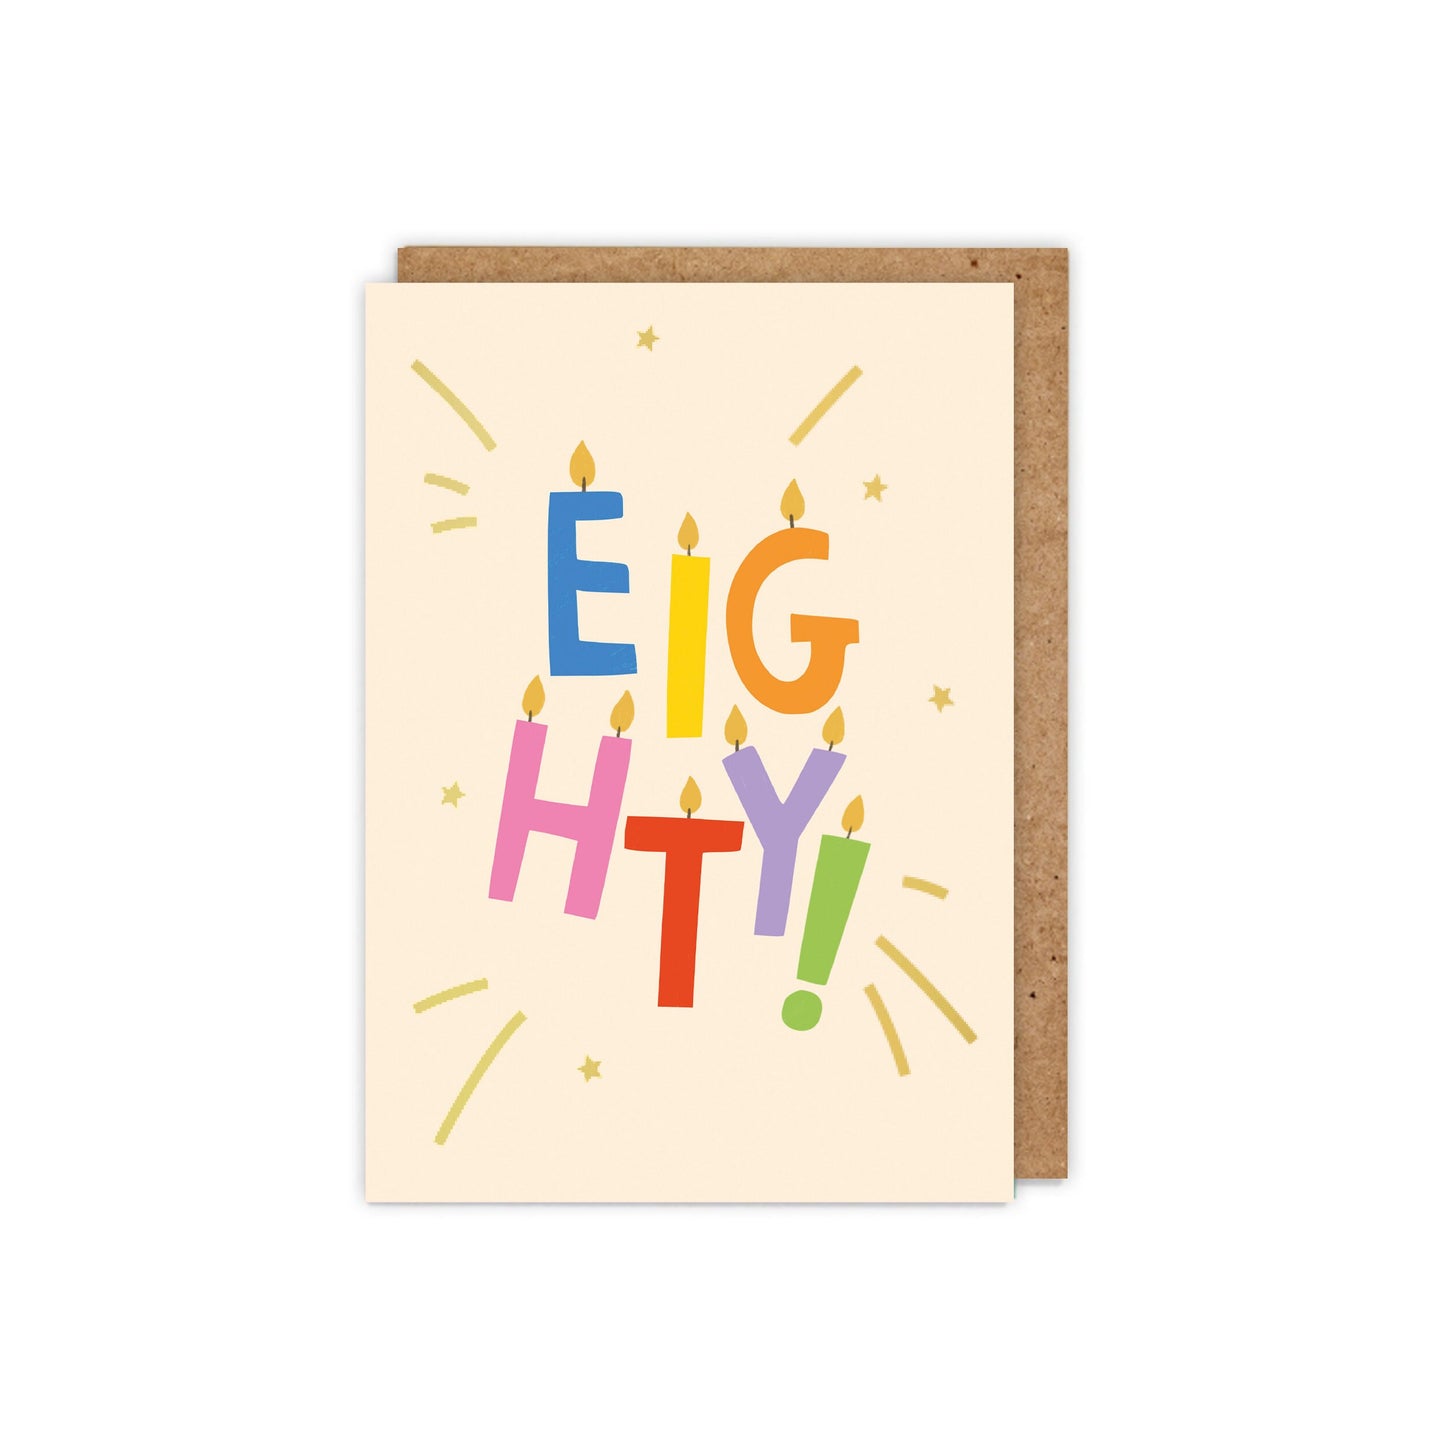 EIGHTY! Gold Foiled Birthday Card